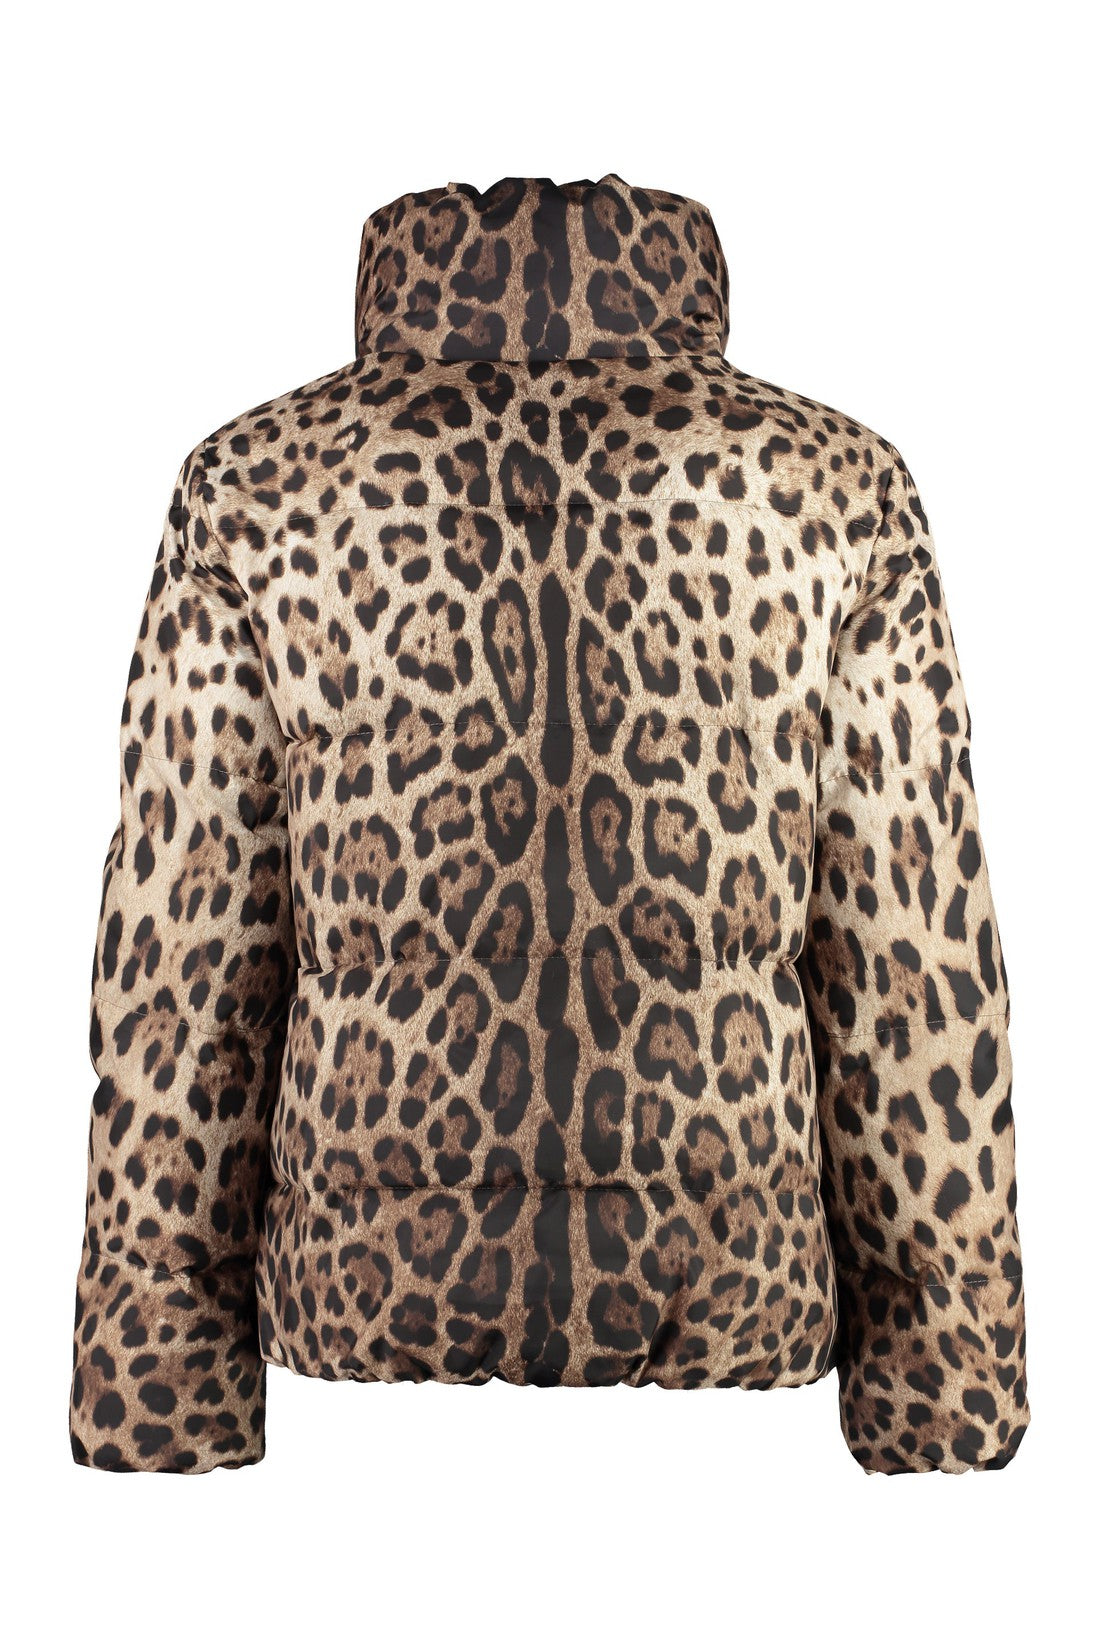 Dolce & Gabbana-OUTLET-SALE-Leopard print short down jacket-ARCHIVIST